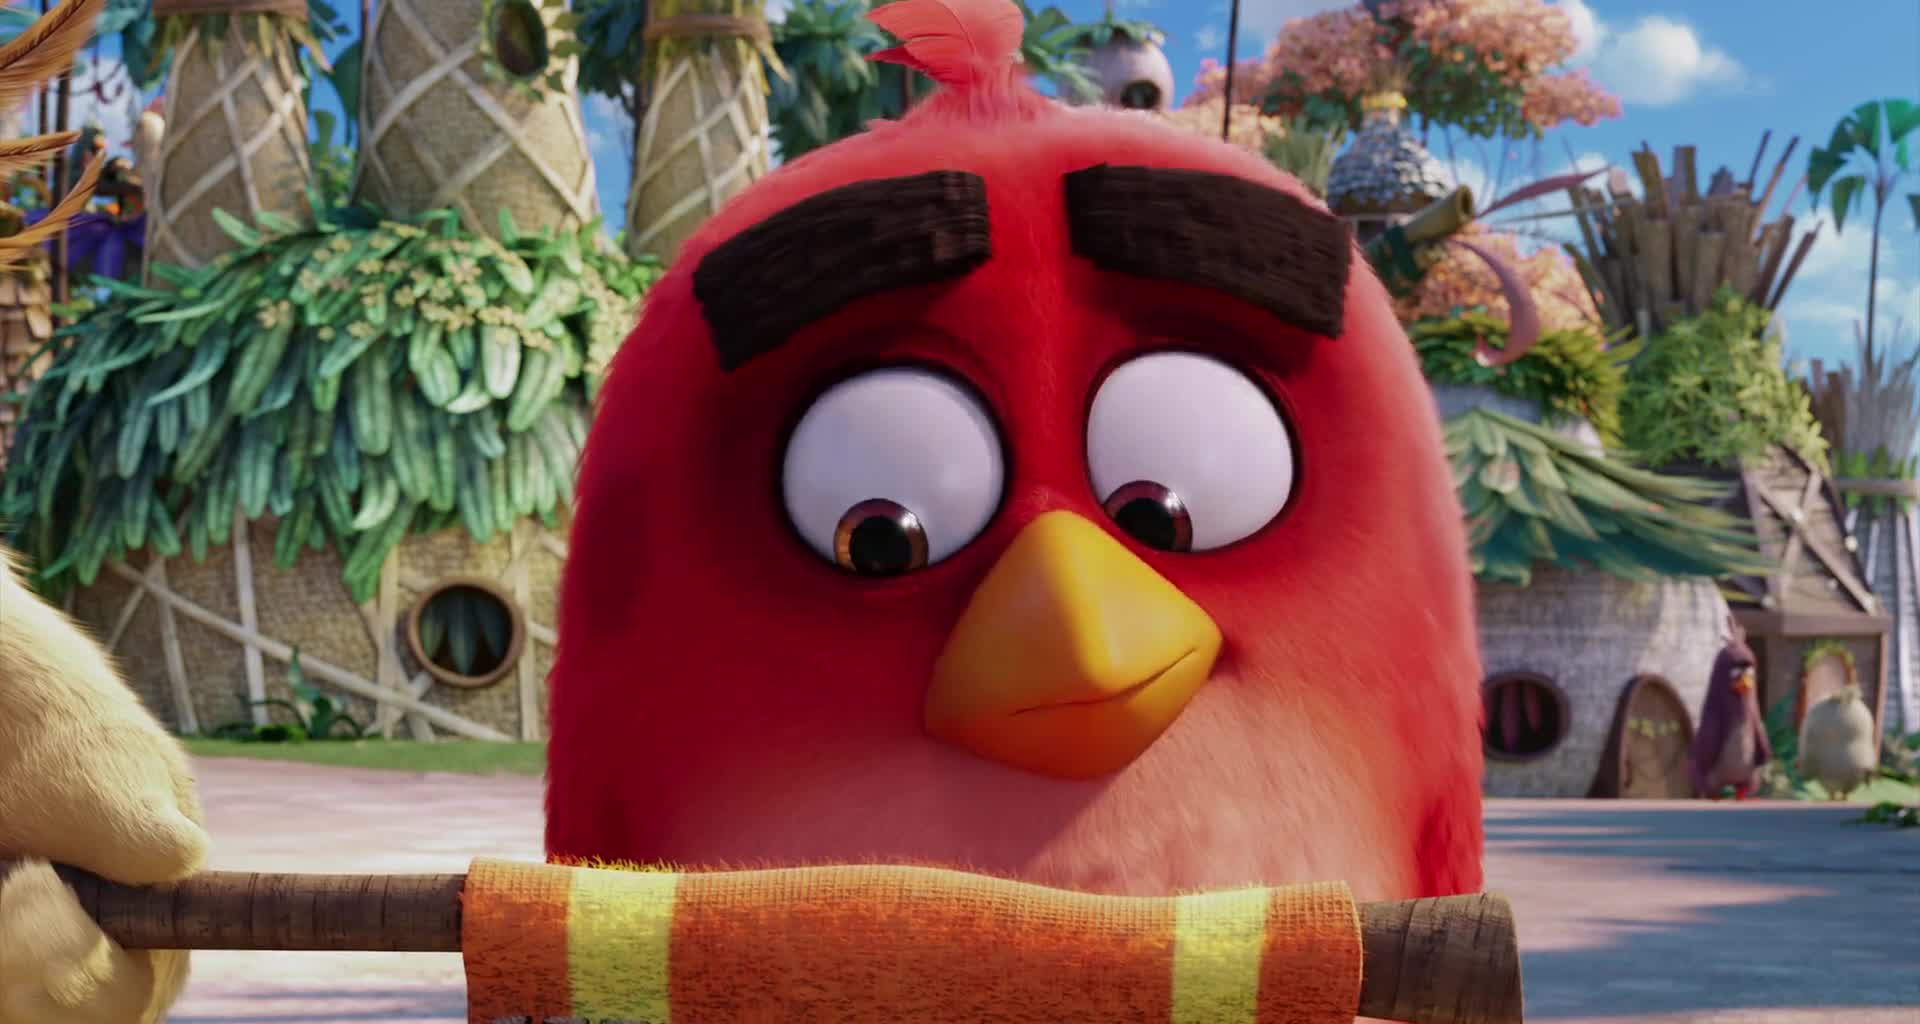 Angry Birds ve filmu cz+sk dabing HD mkv